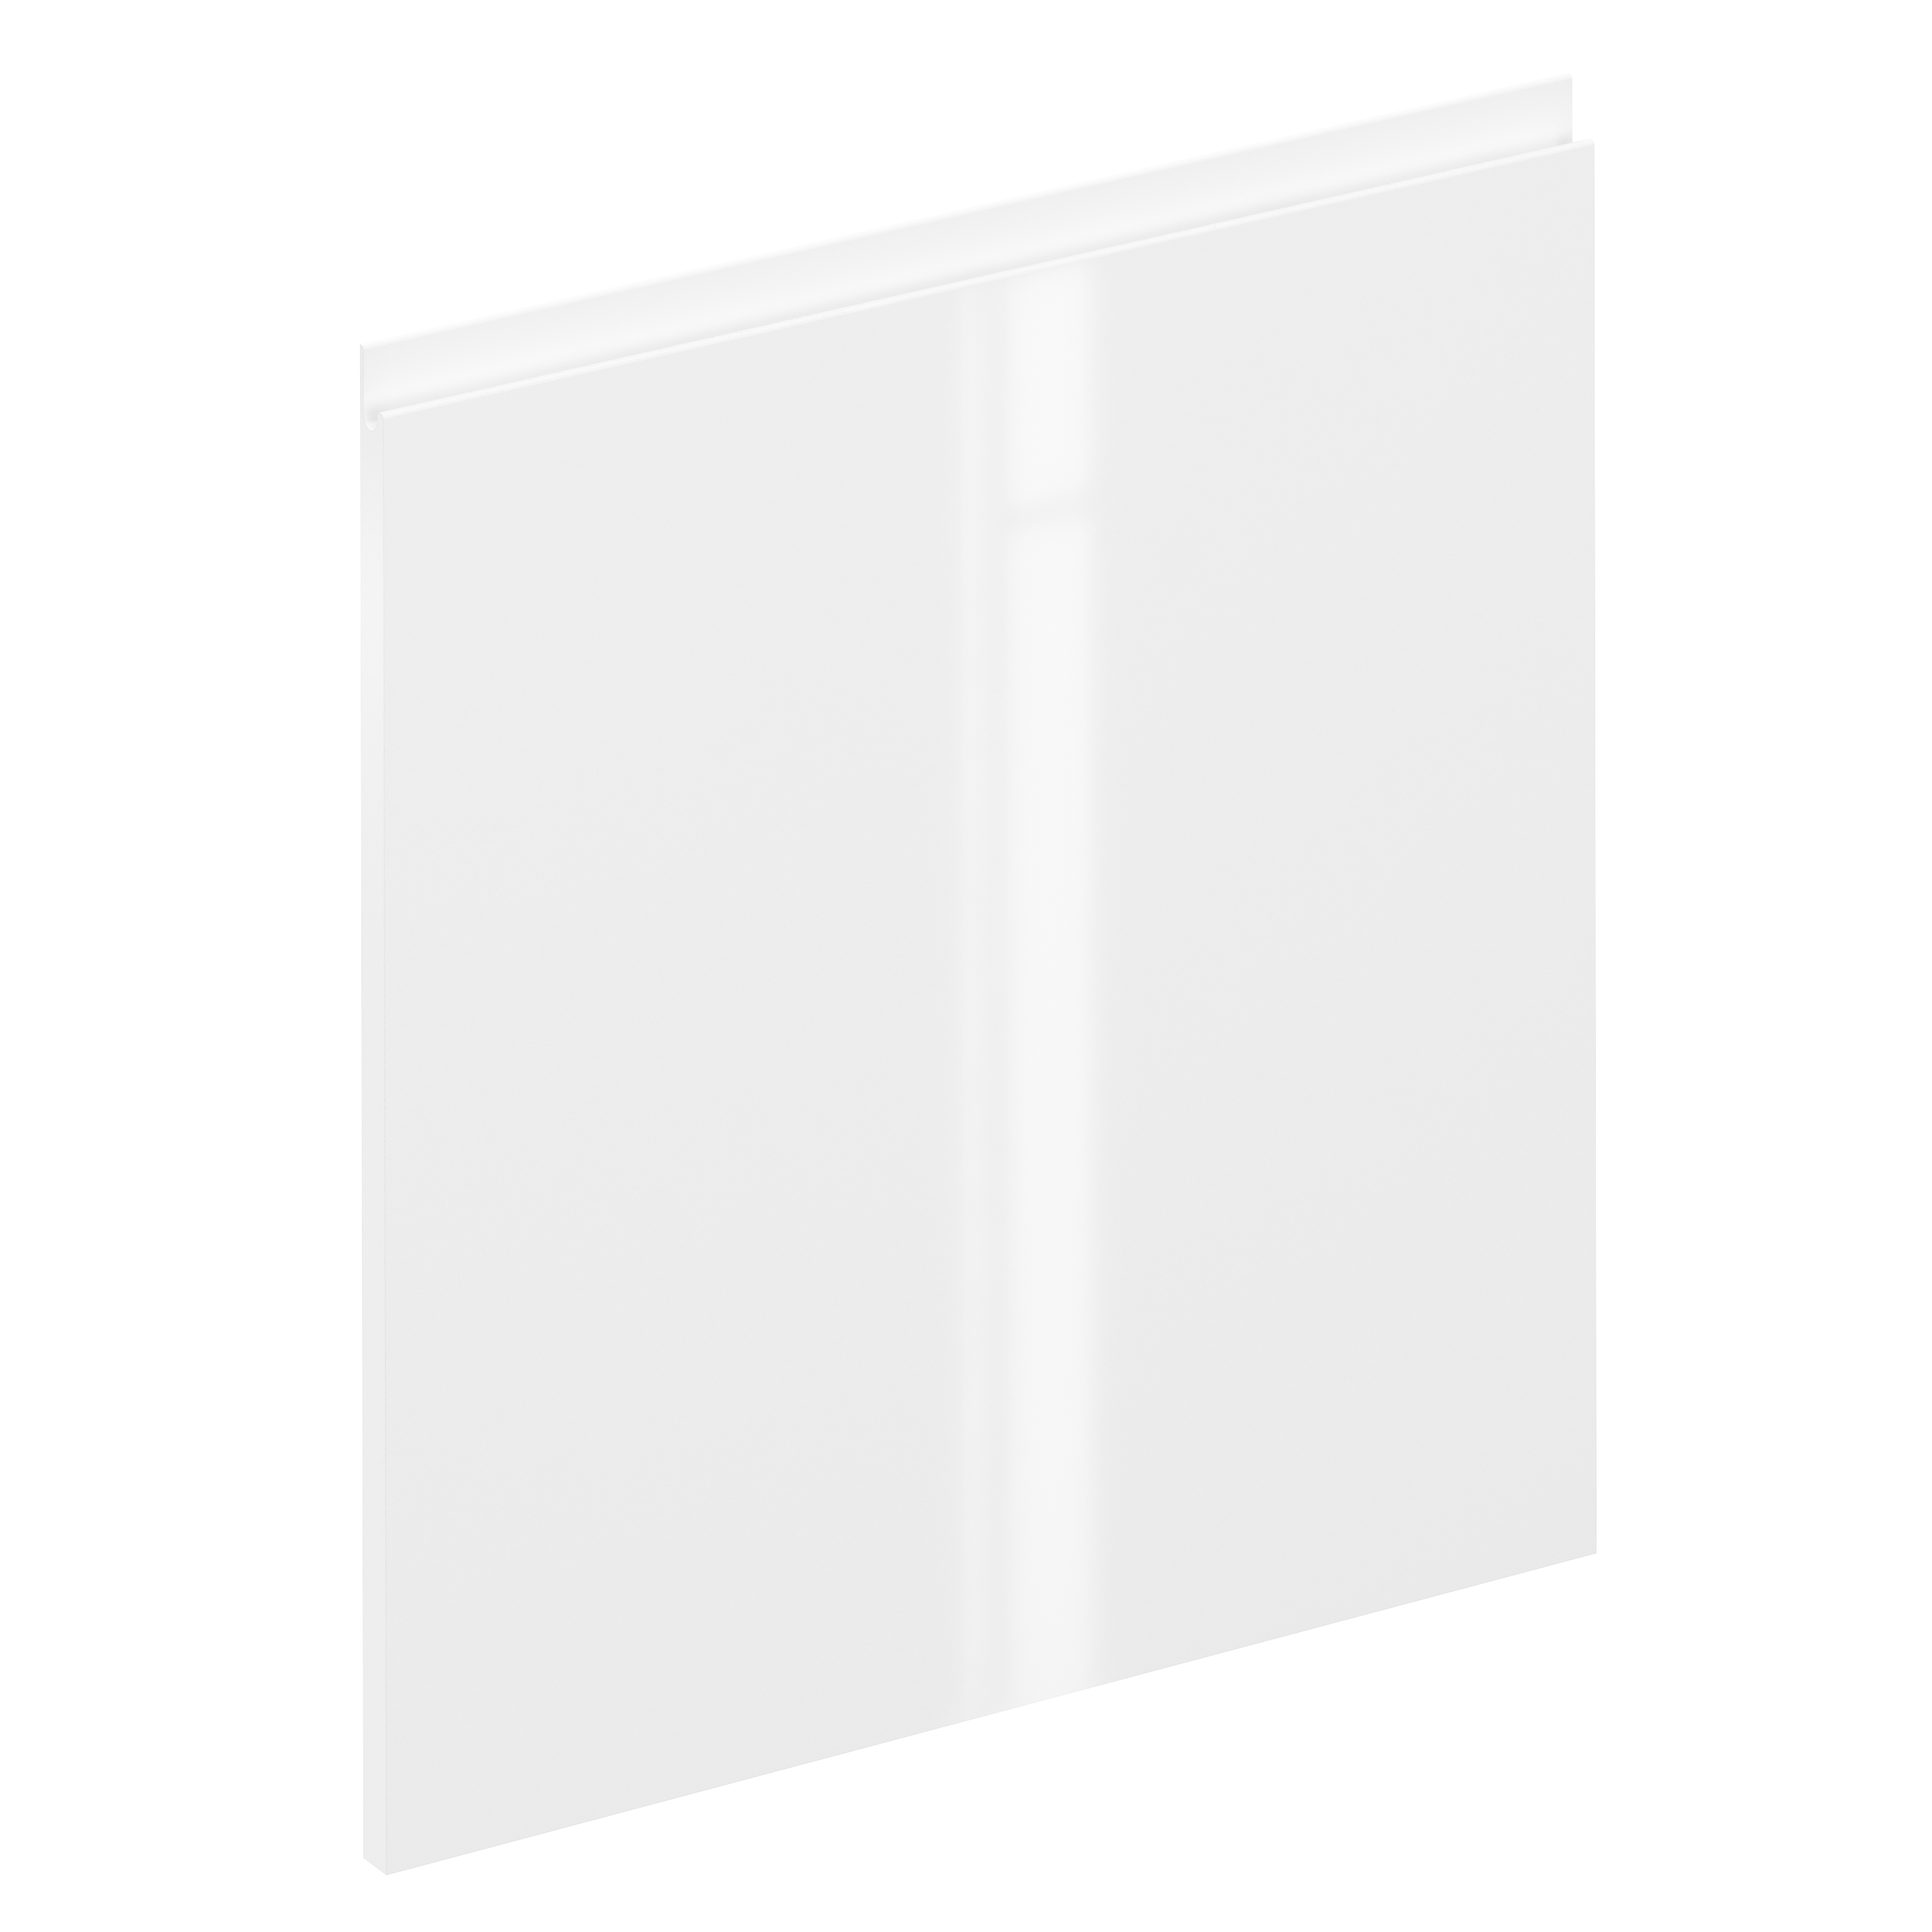 Puerta para mueble de cocina tokyo blanco brillo h 64 x l 60 cm